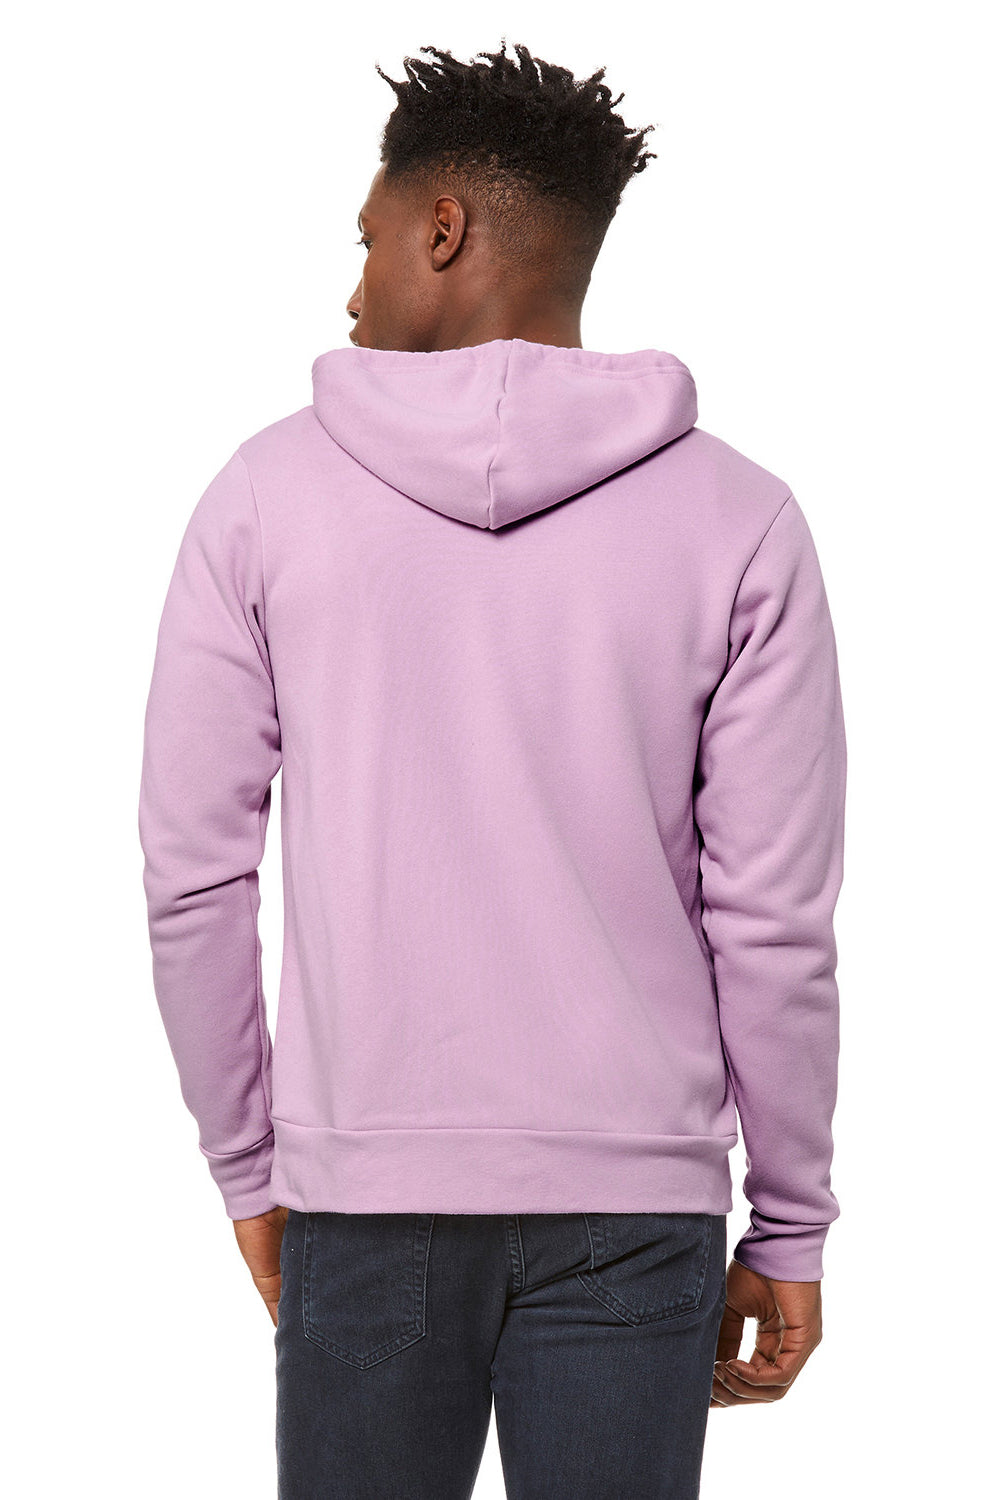 Bella + Canvas BC3739/3739 Mens Fleece Full Zip Hooded Sweatshirt Hoodie Lilac Model Back